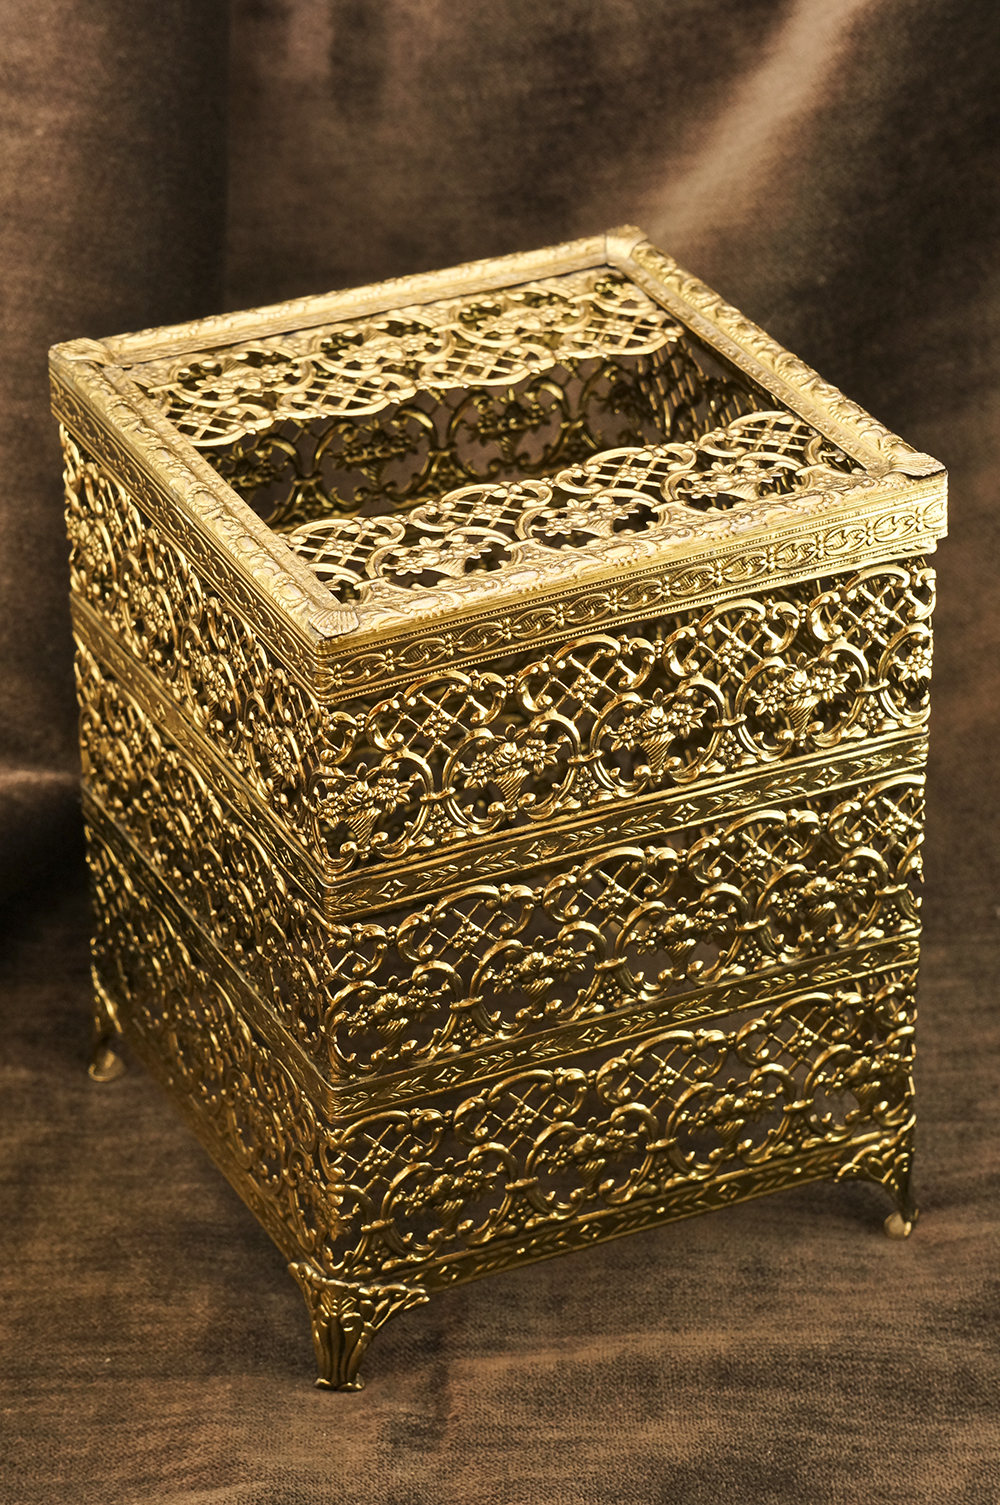 Sold:マトソン製 ゴールド 正方形 脚付き ティッシュボックス